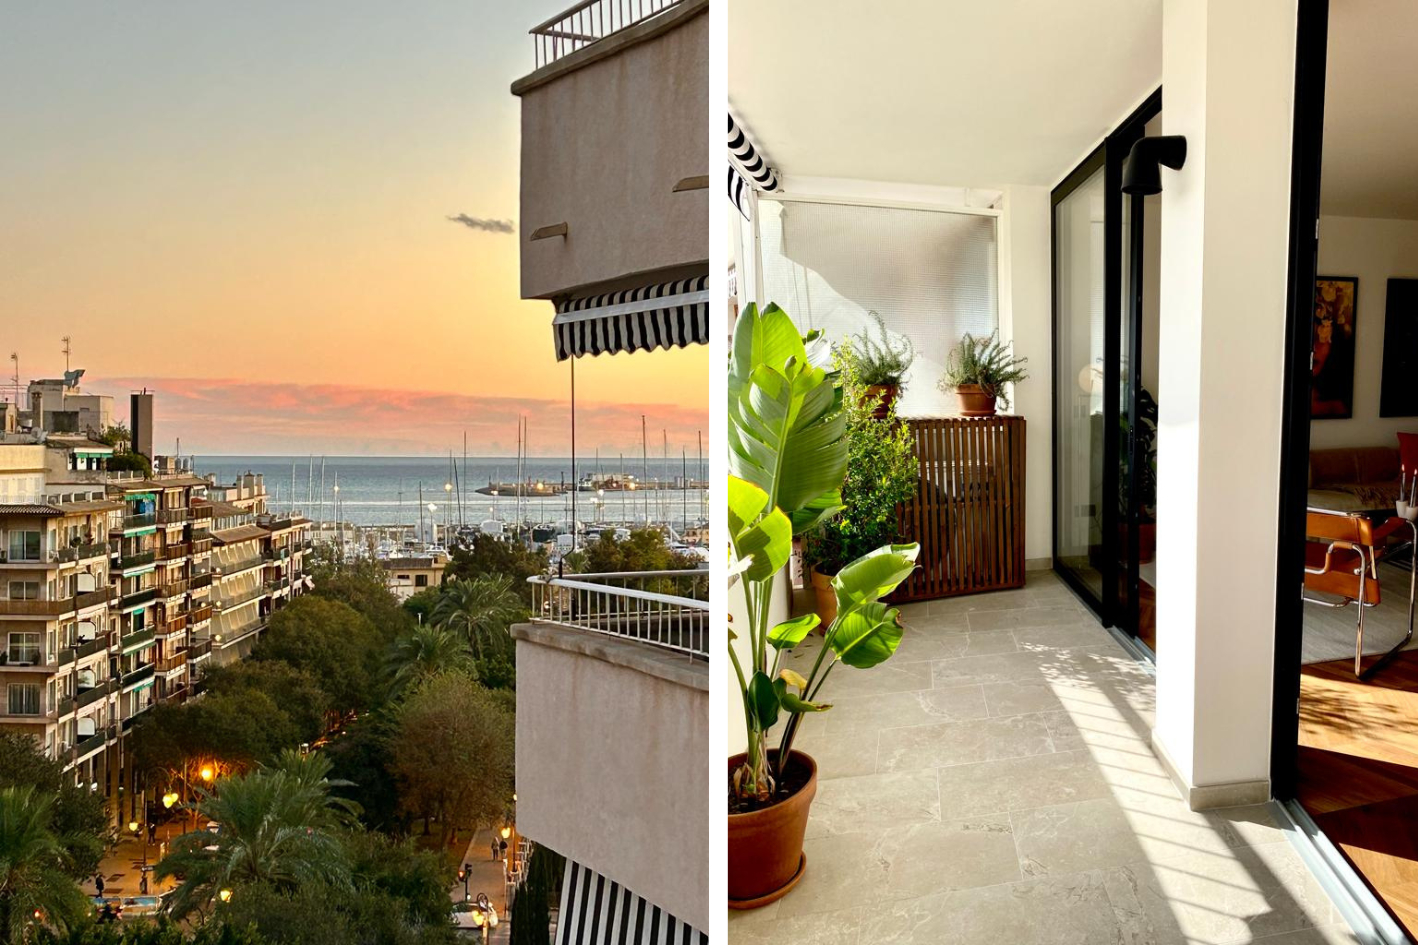 Moderno piso en Paseo Mallorca con terraza vista mar